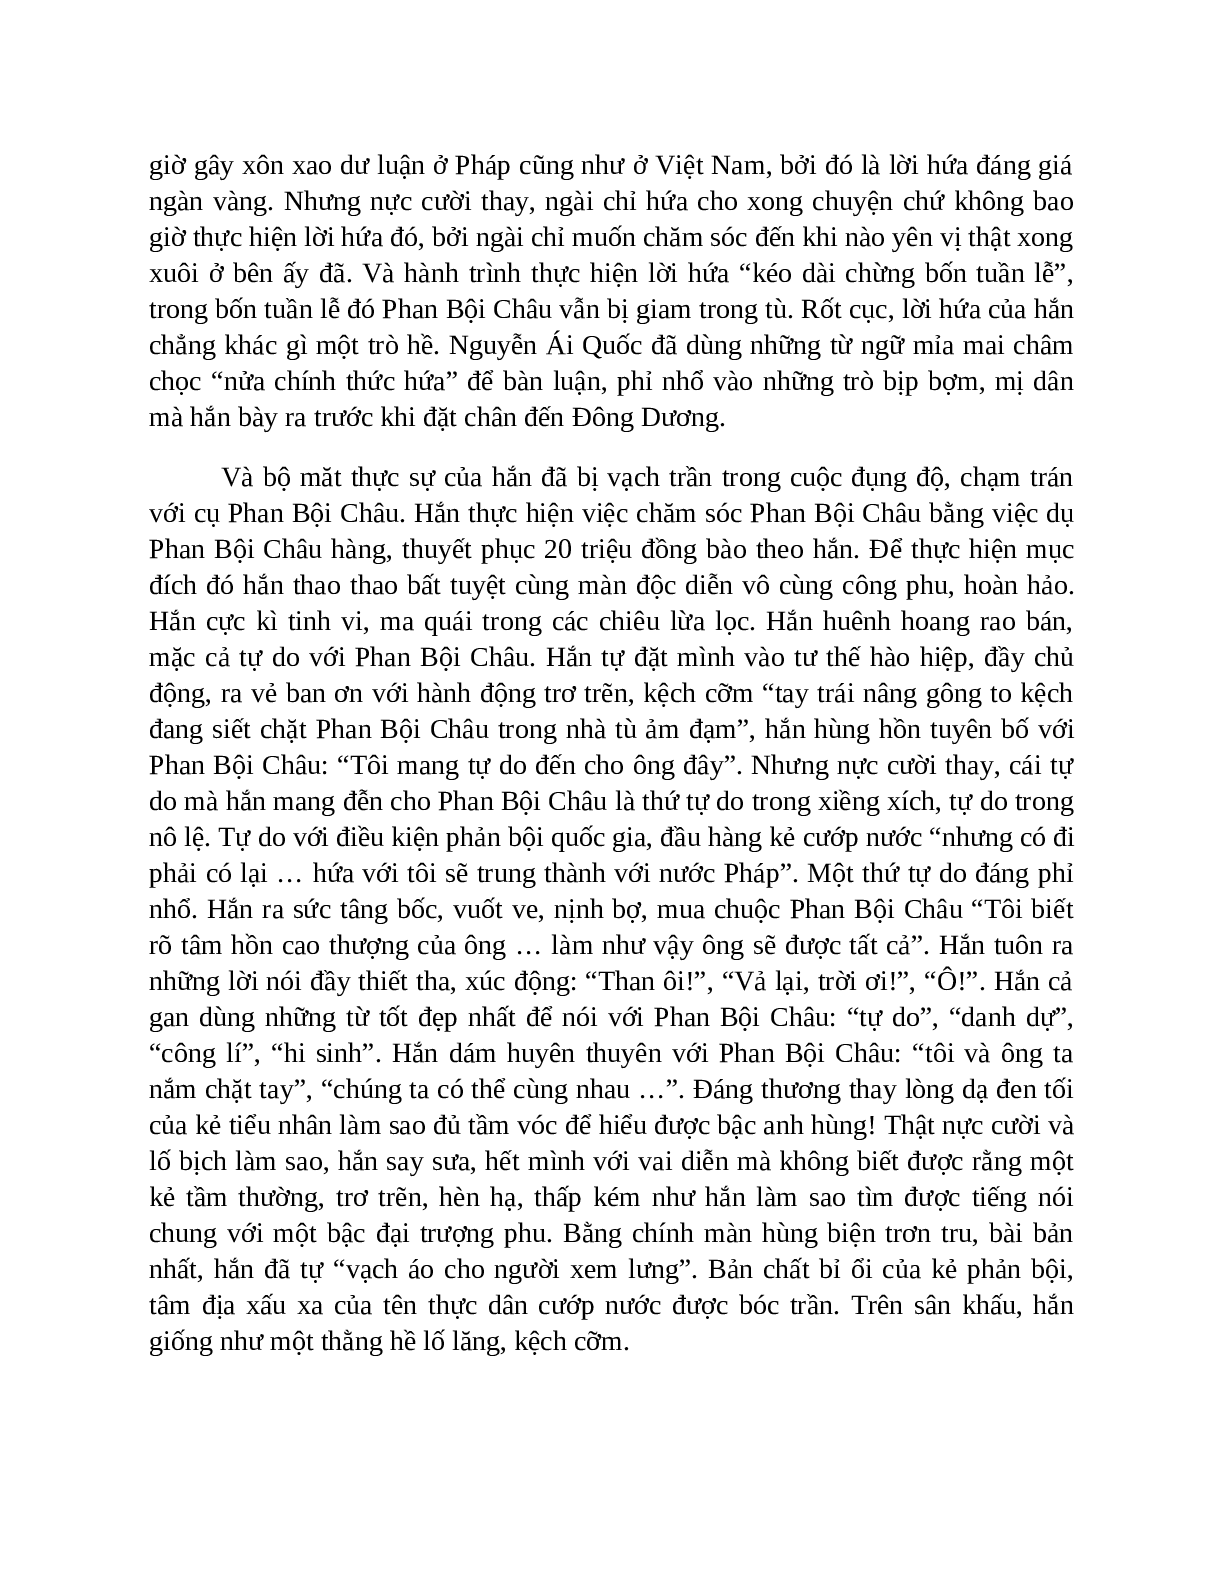 Sơ đồ tư duy bài Những trò lố hay là Varen và Phan Bội Châu dễ nhớ, ngắn nhất - Ngữ văn lớp 7 (trang 6)